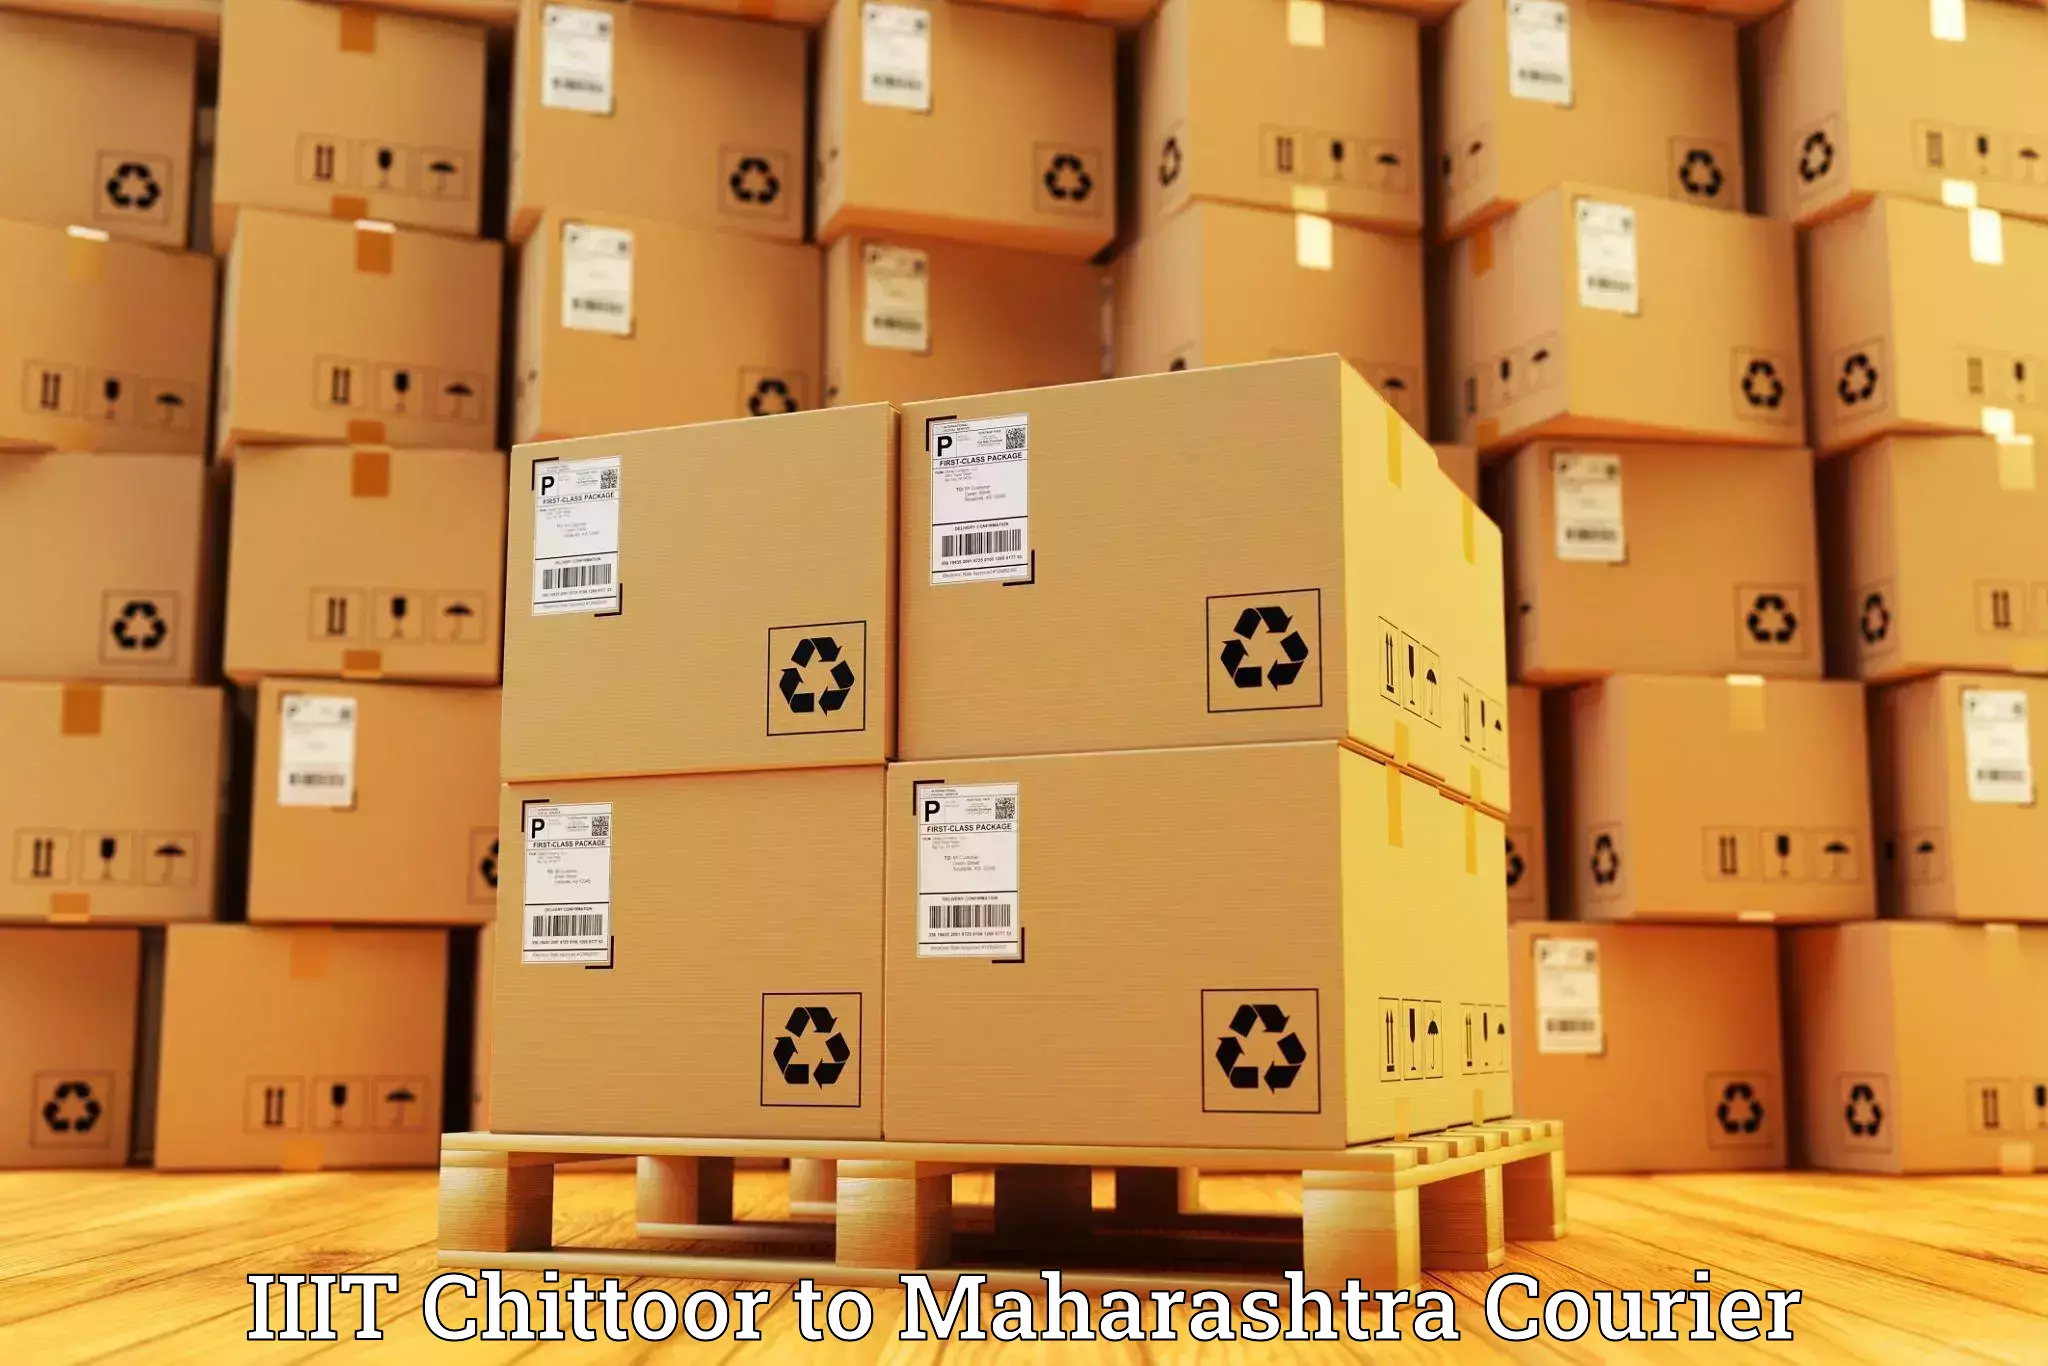 Cargo delivery service IIIT Chittoor to Ratnagiri